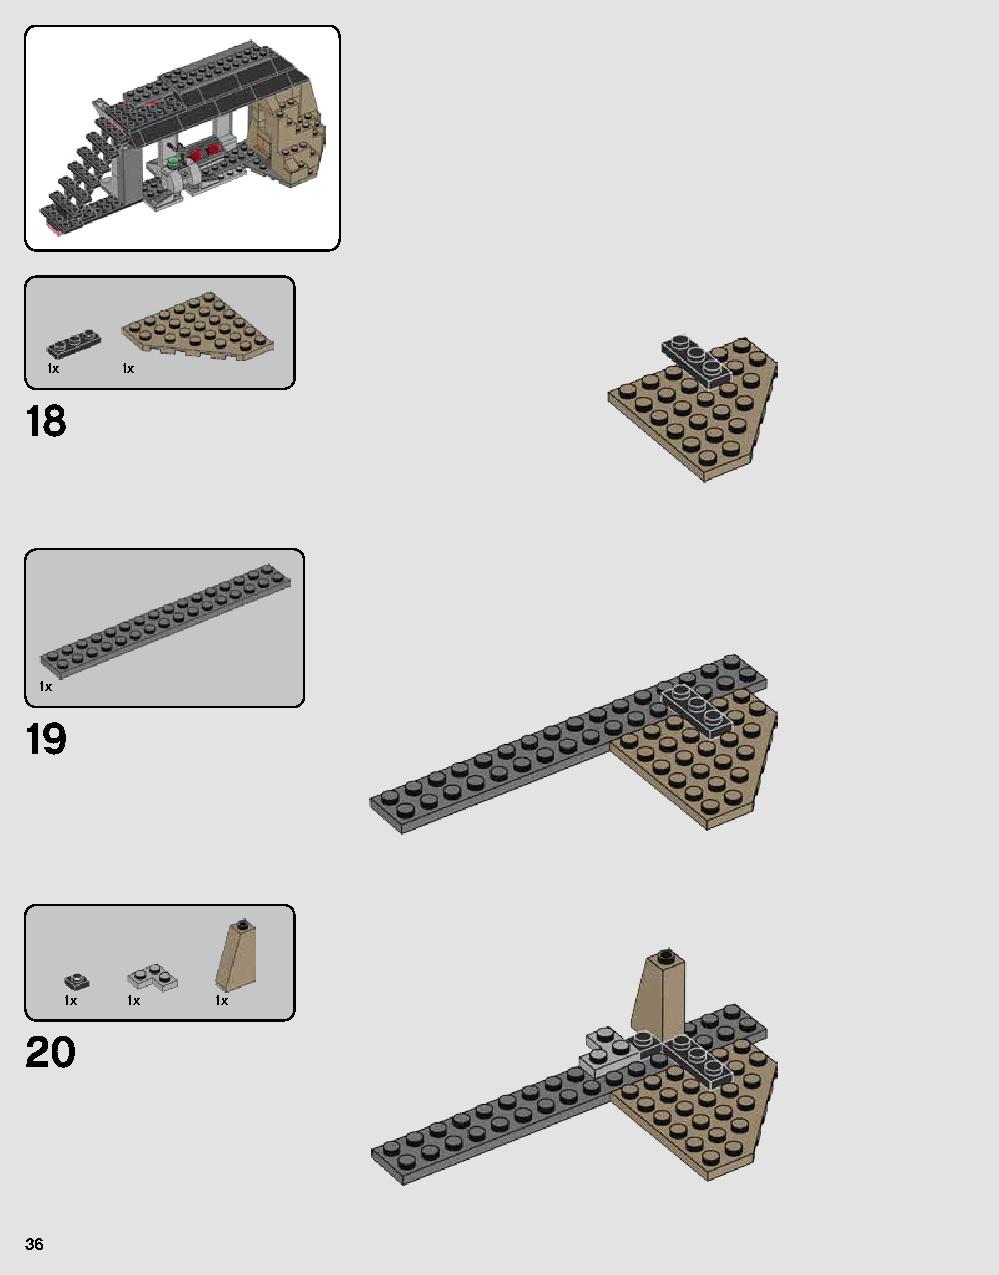 ダース・ベイダーの城 75251 レゴの商品情報 レゴの説明書・組立方法 36 page